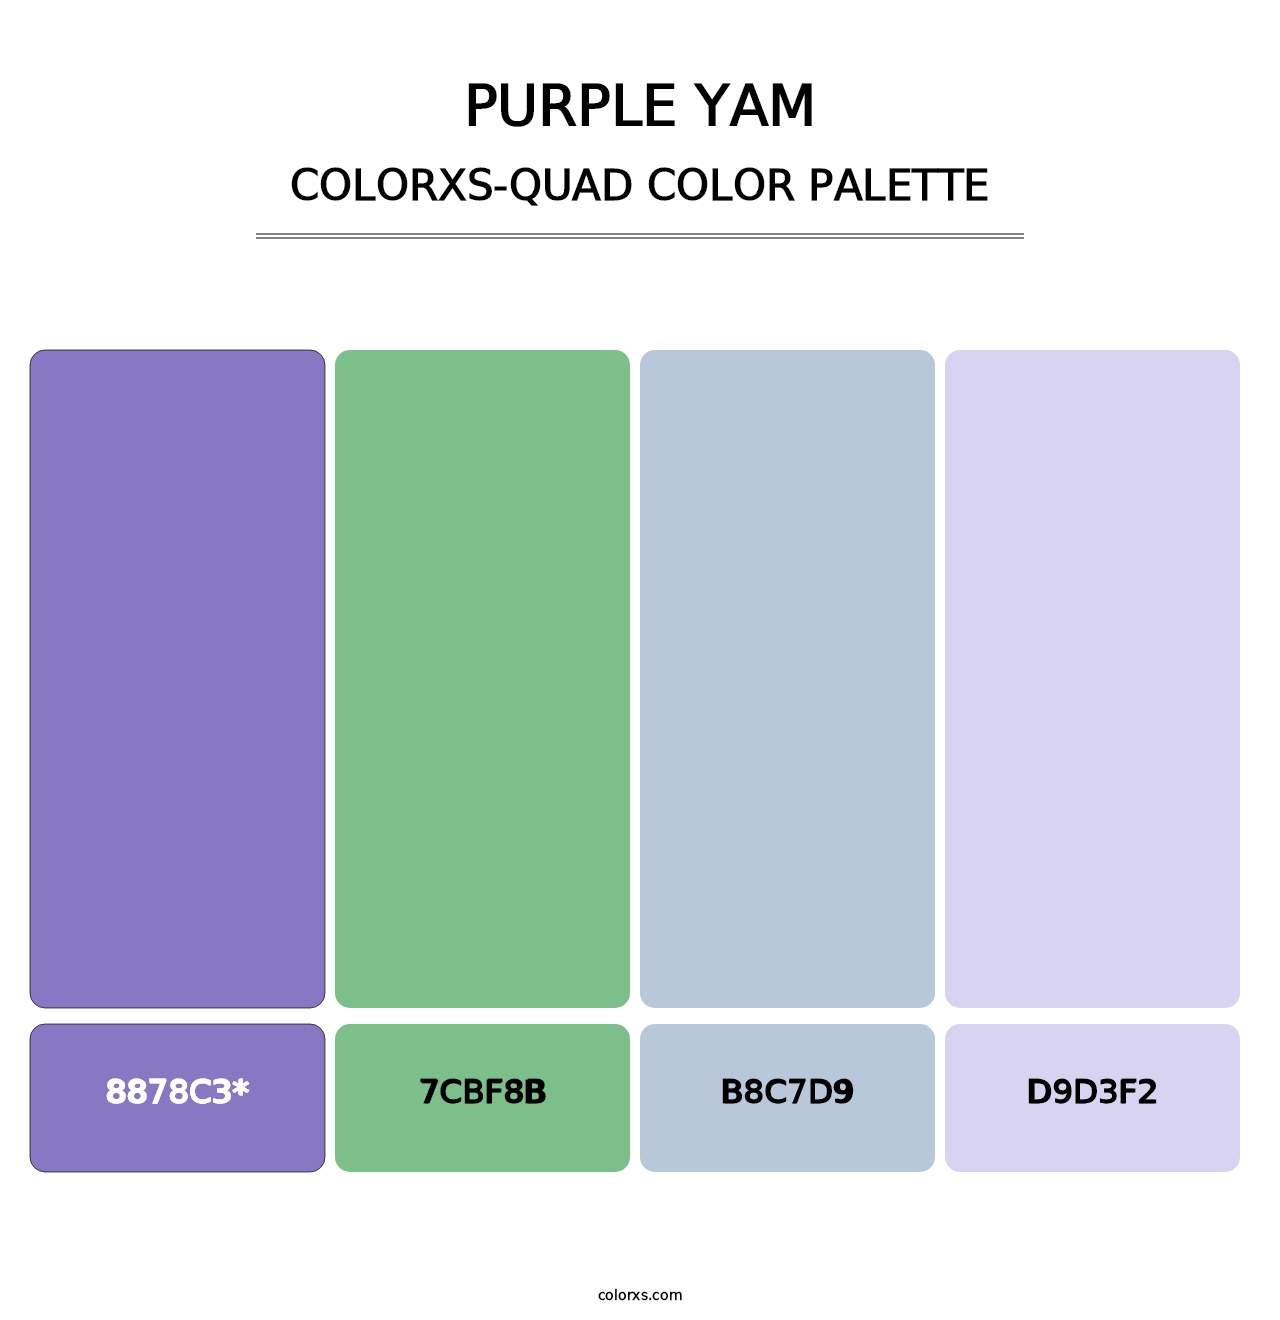 Purple Yam - Colorxs Quad Palette